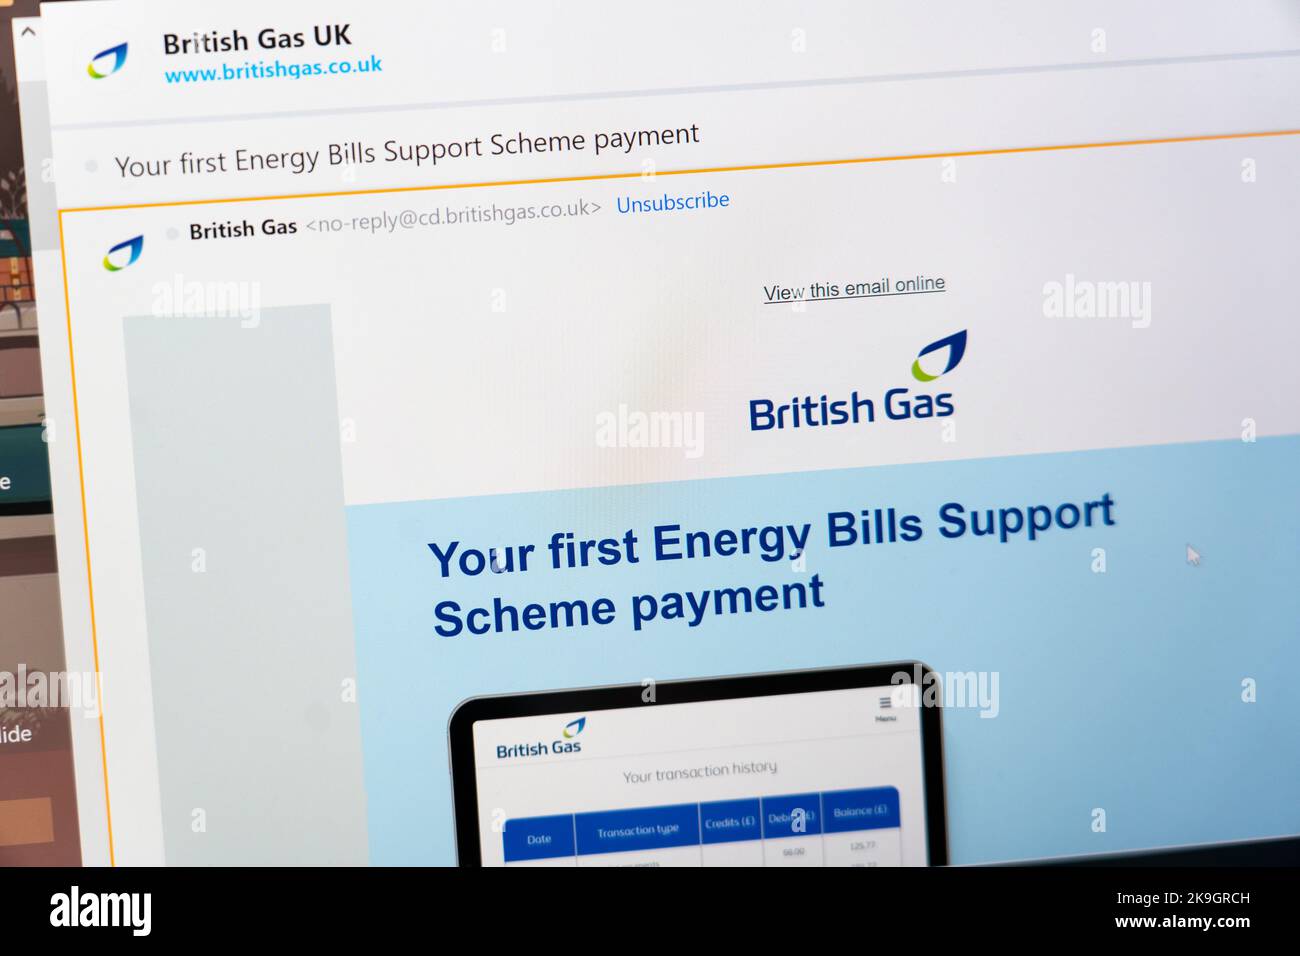 Un'e-mail di British gas sullo schermo di un laptop che conferma un pagamento del primo piano di supporto per le fatture energetiche a un cliente del gas a causa dei prezzi elevati del gas. Inghilterra Foto Stock